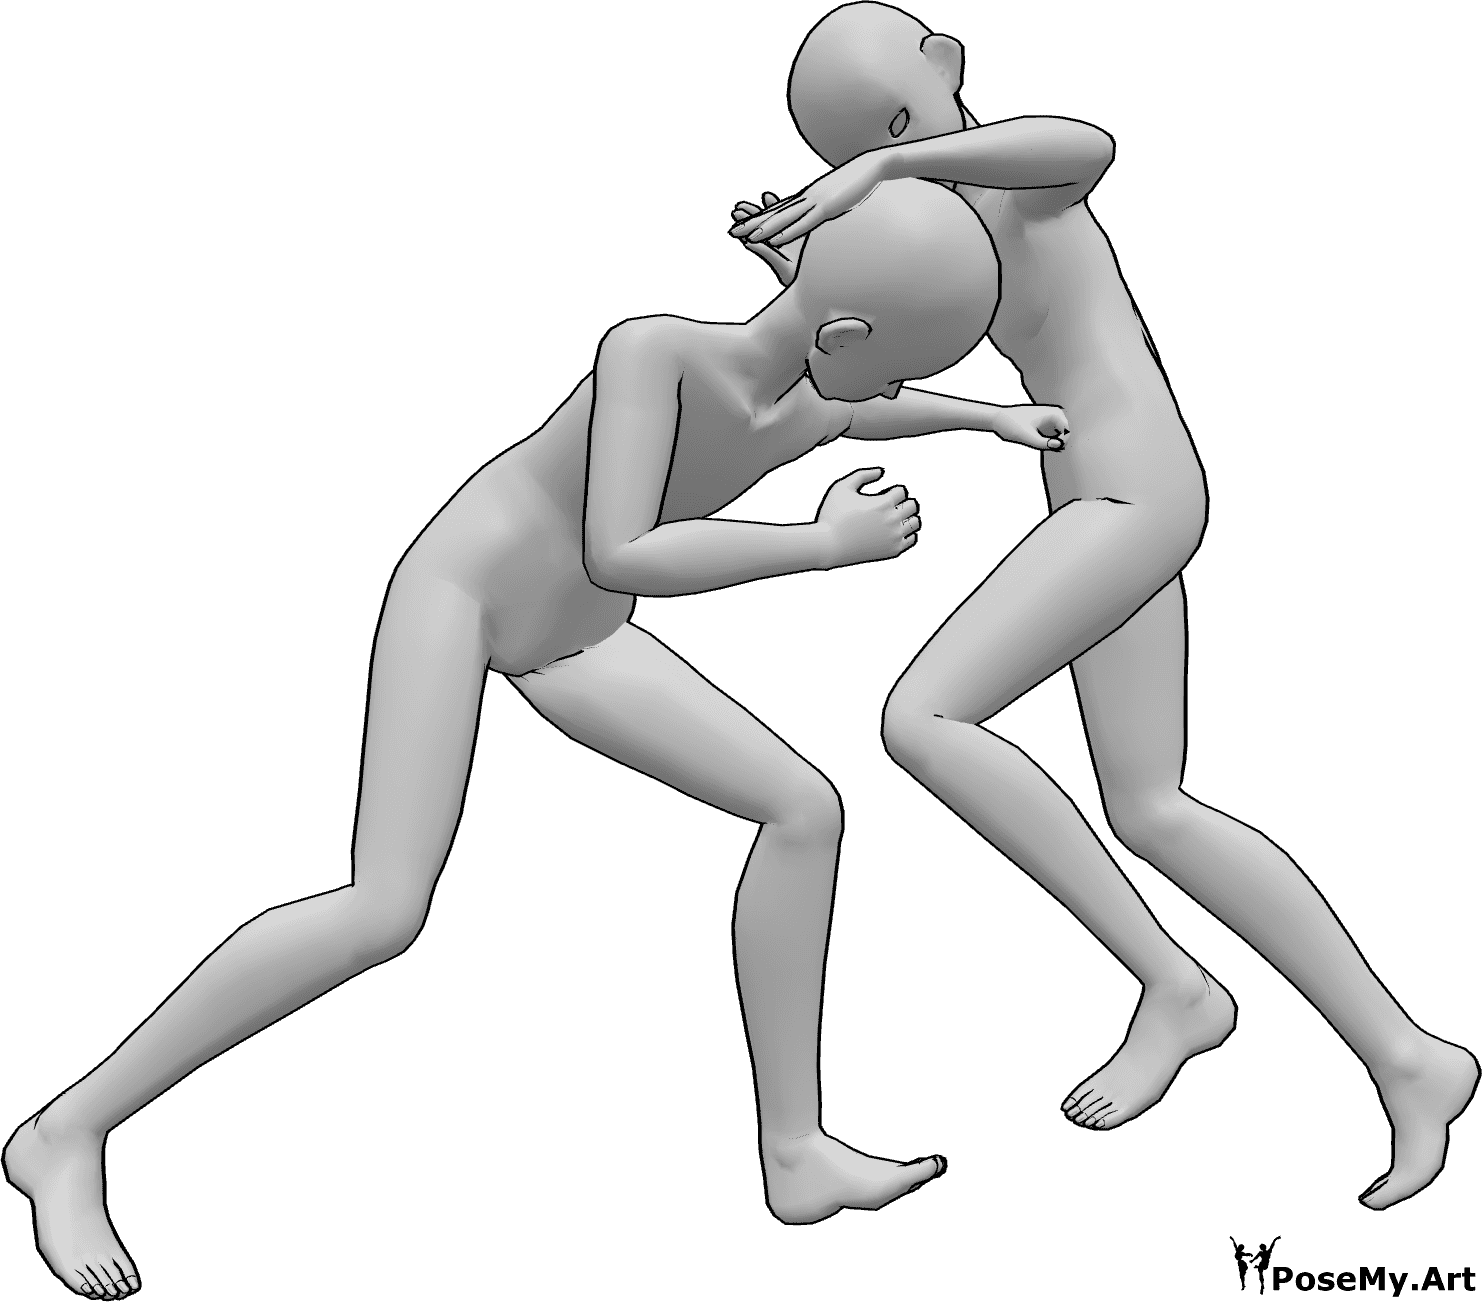 Référence des poses- Pose de combat d'anime - Deux hommes animés se battent, l'un donne un coup de poing à l'autre dans l'estomac, l'autre lui donne un coup de genou dans la tête.